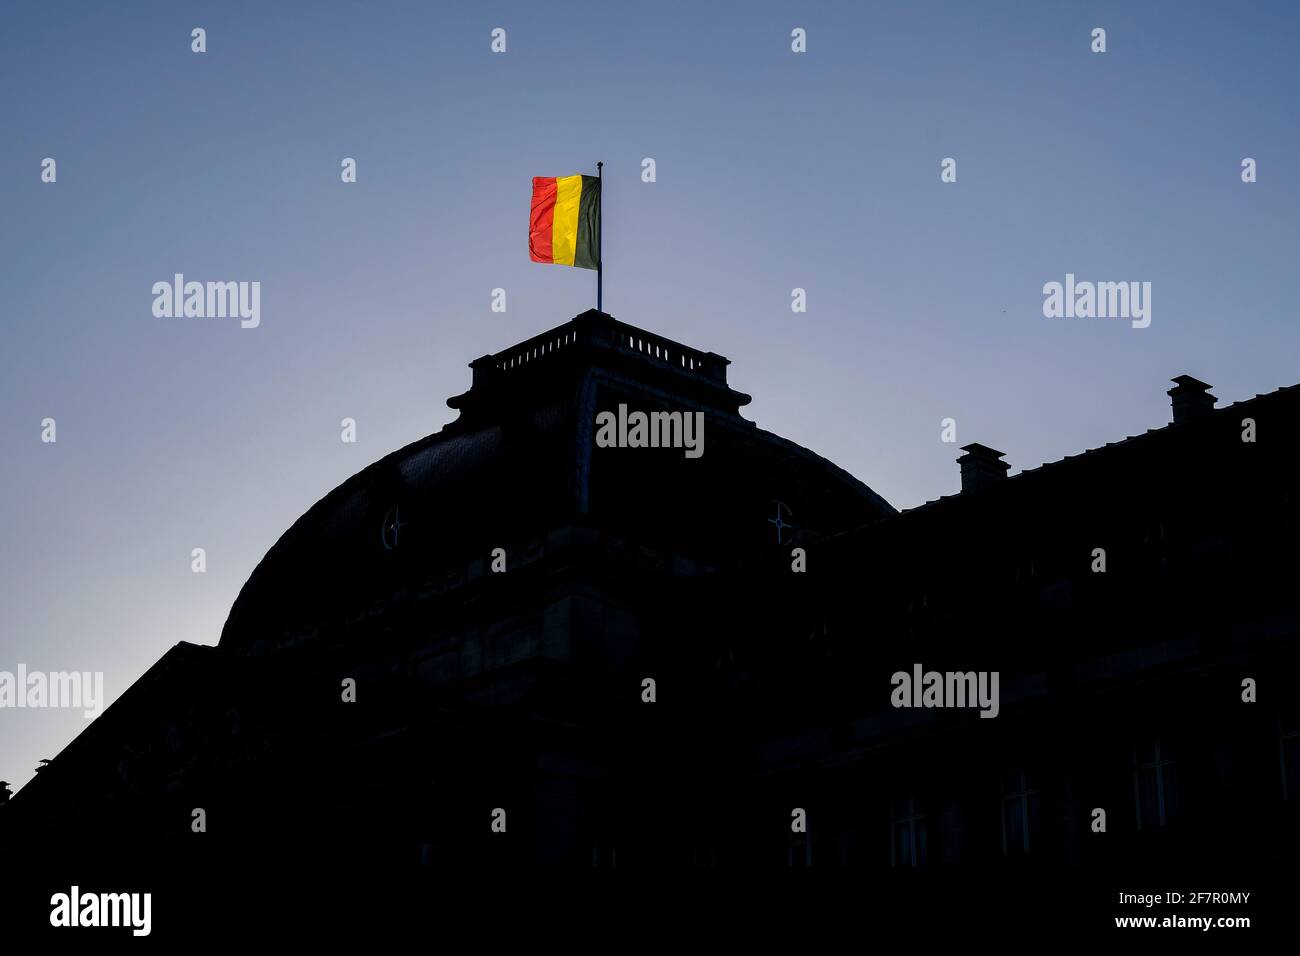 15.12.2019, Brüssel, Belgien - die belgische Fahne auf dem Dach des königlichen Palastes in Brüssel zeigt an, dass die königliche Familie anwesend ist Stockfoto